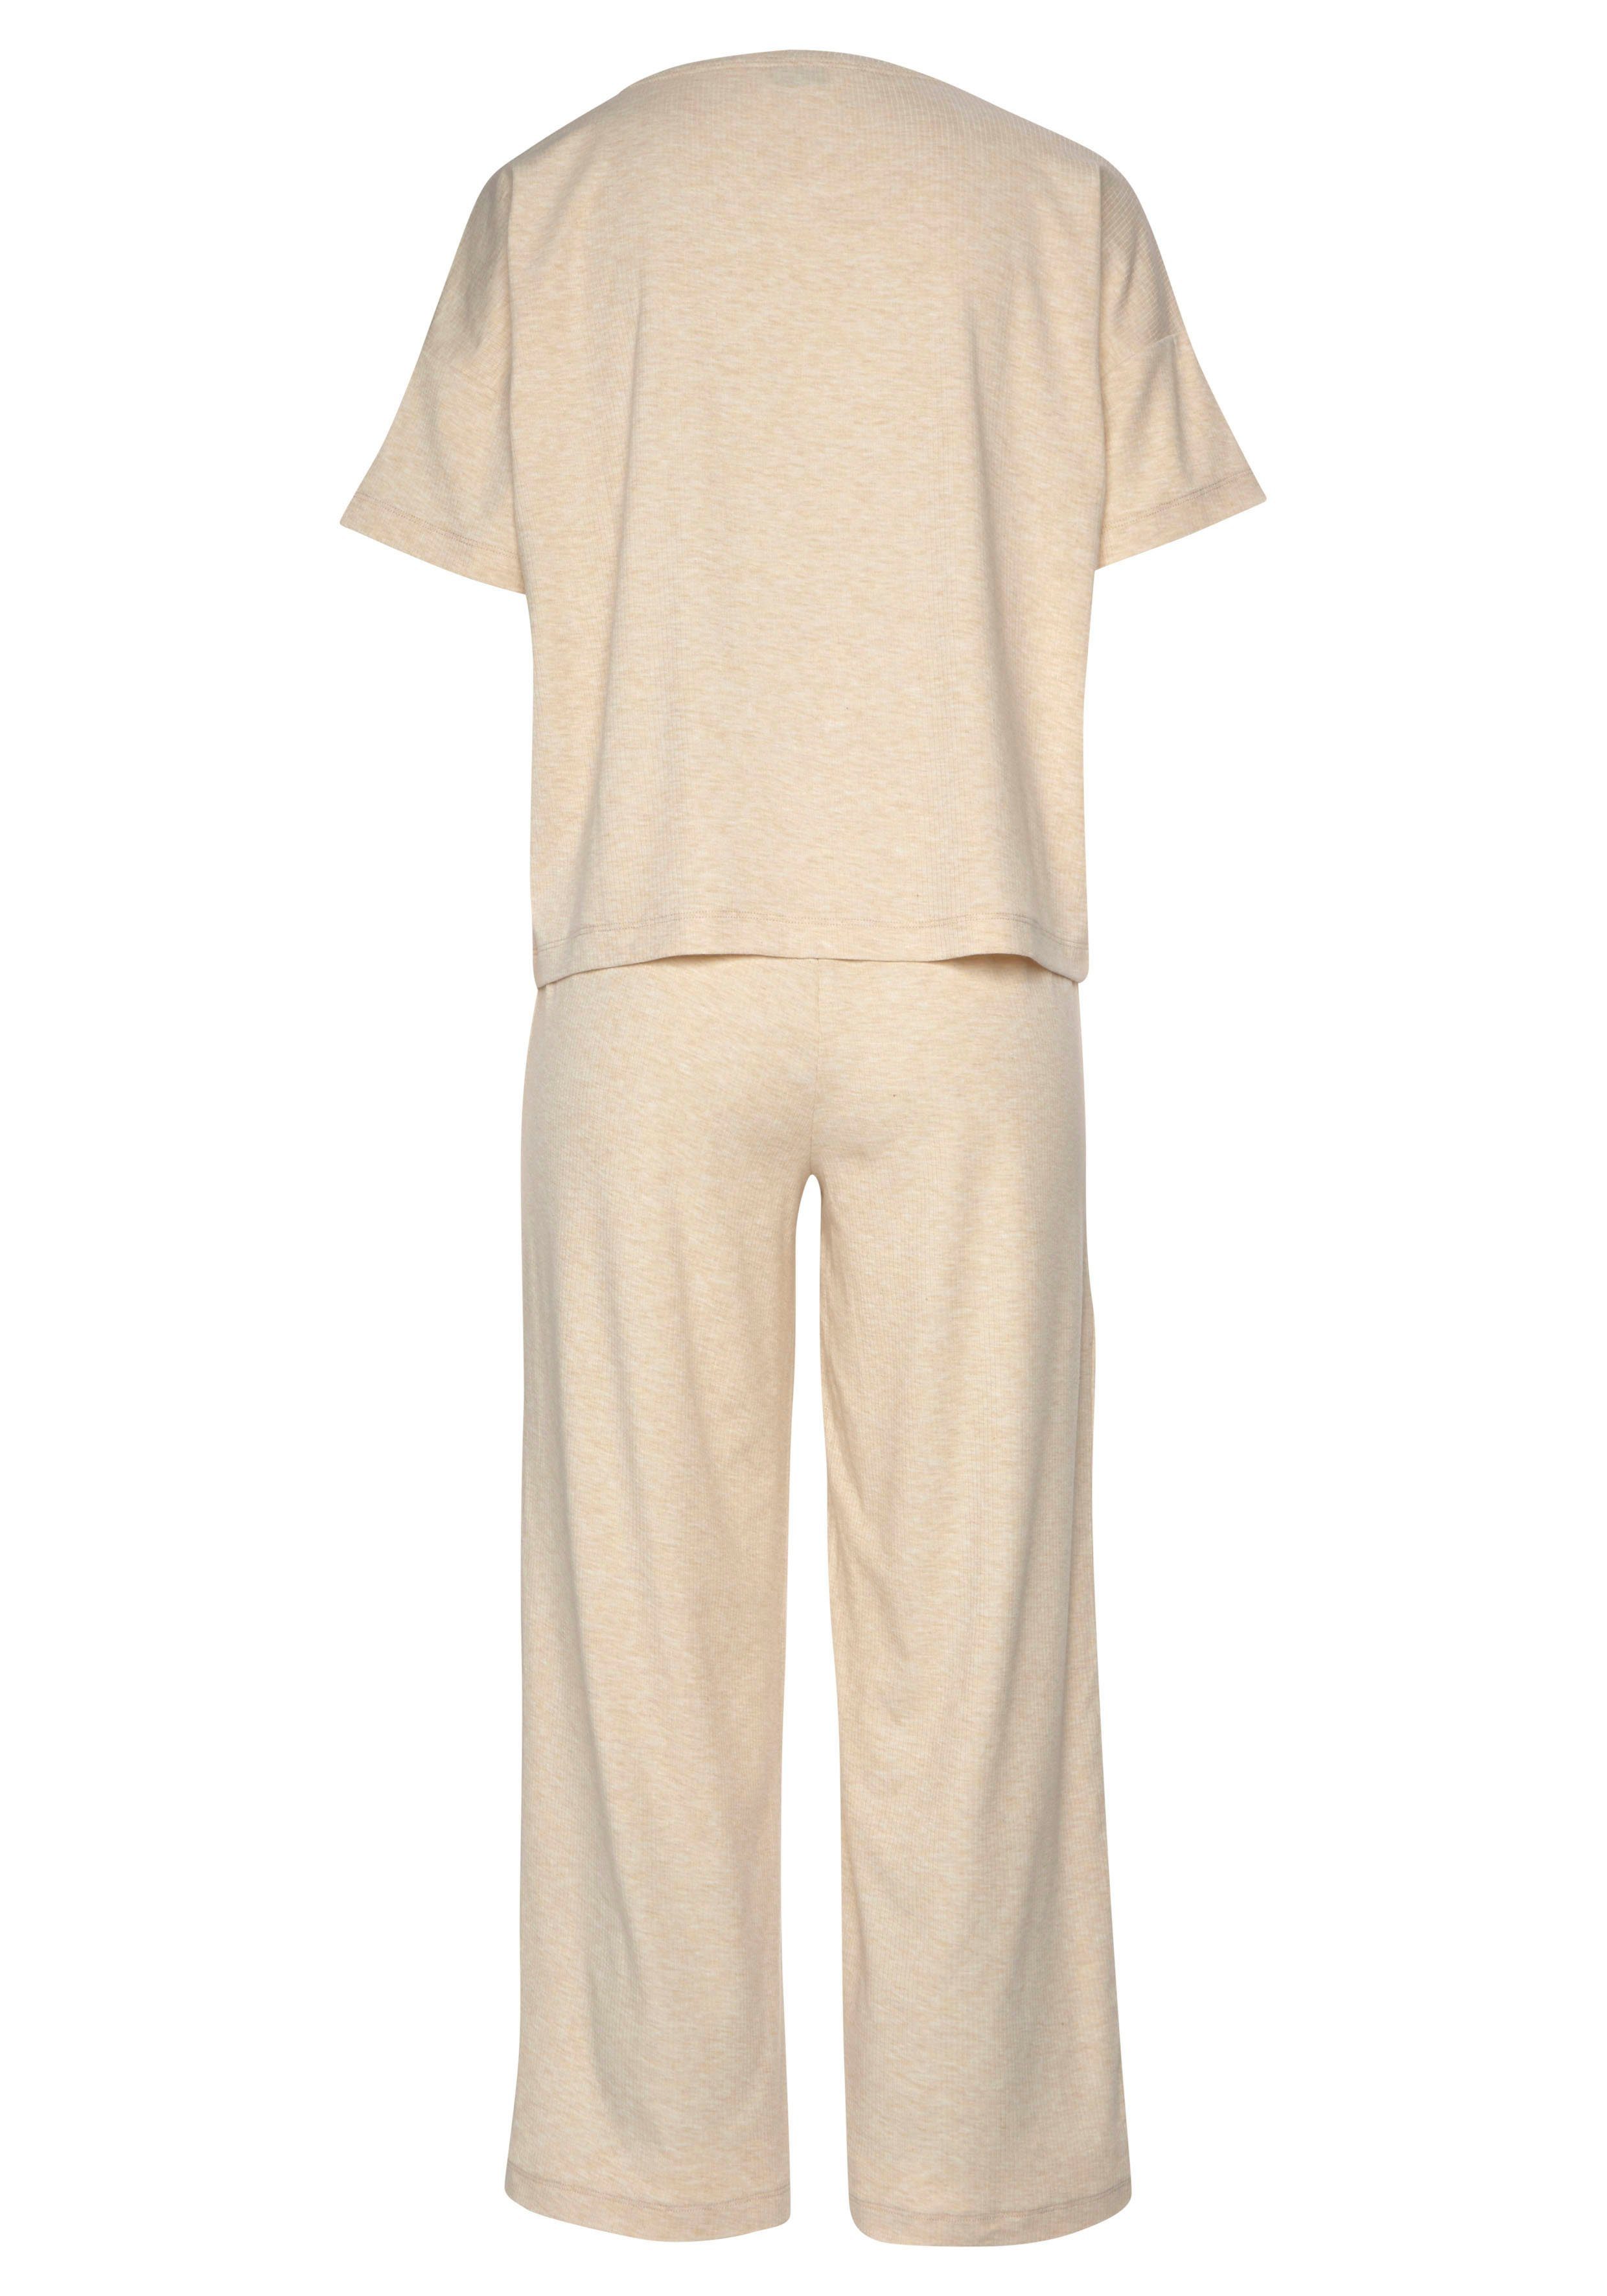 Ripp-Qualität weicher Vivance Dreams Pyjama tlg., 1 in Stück) sand (2